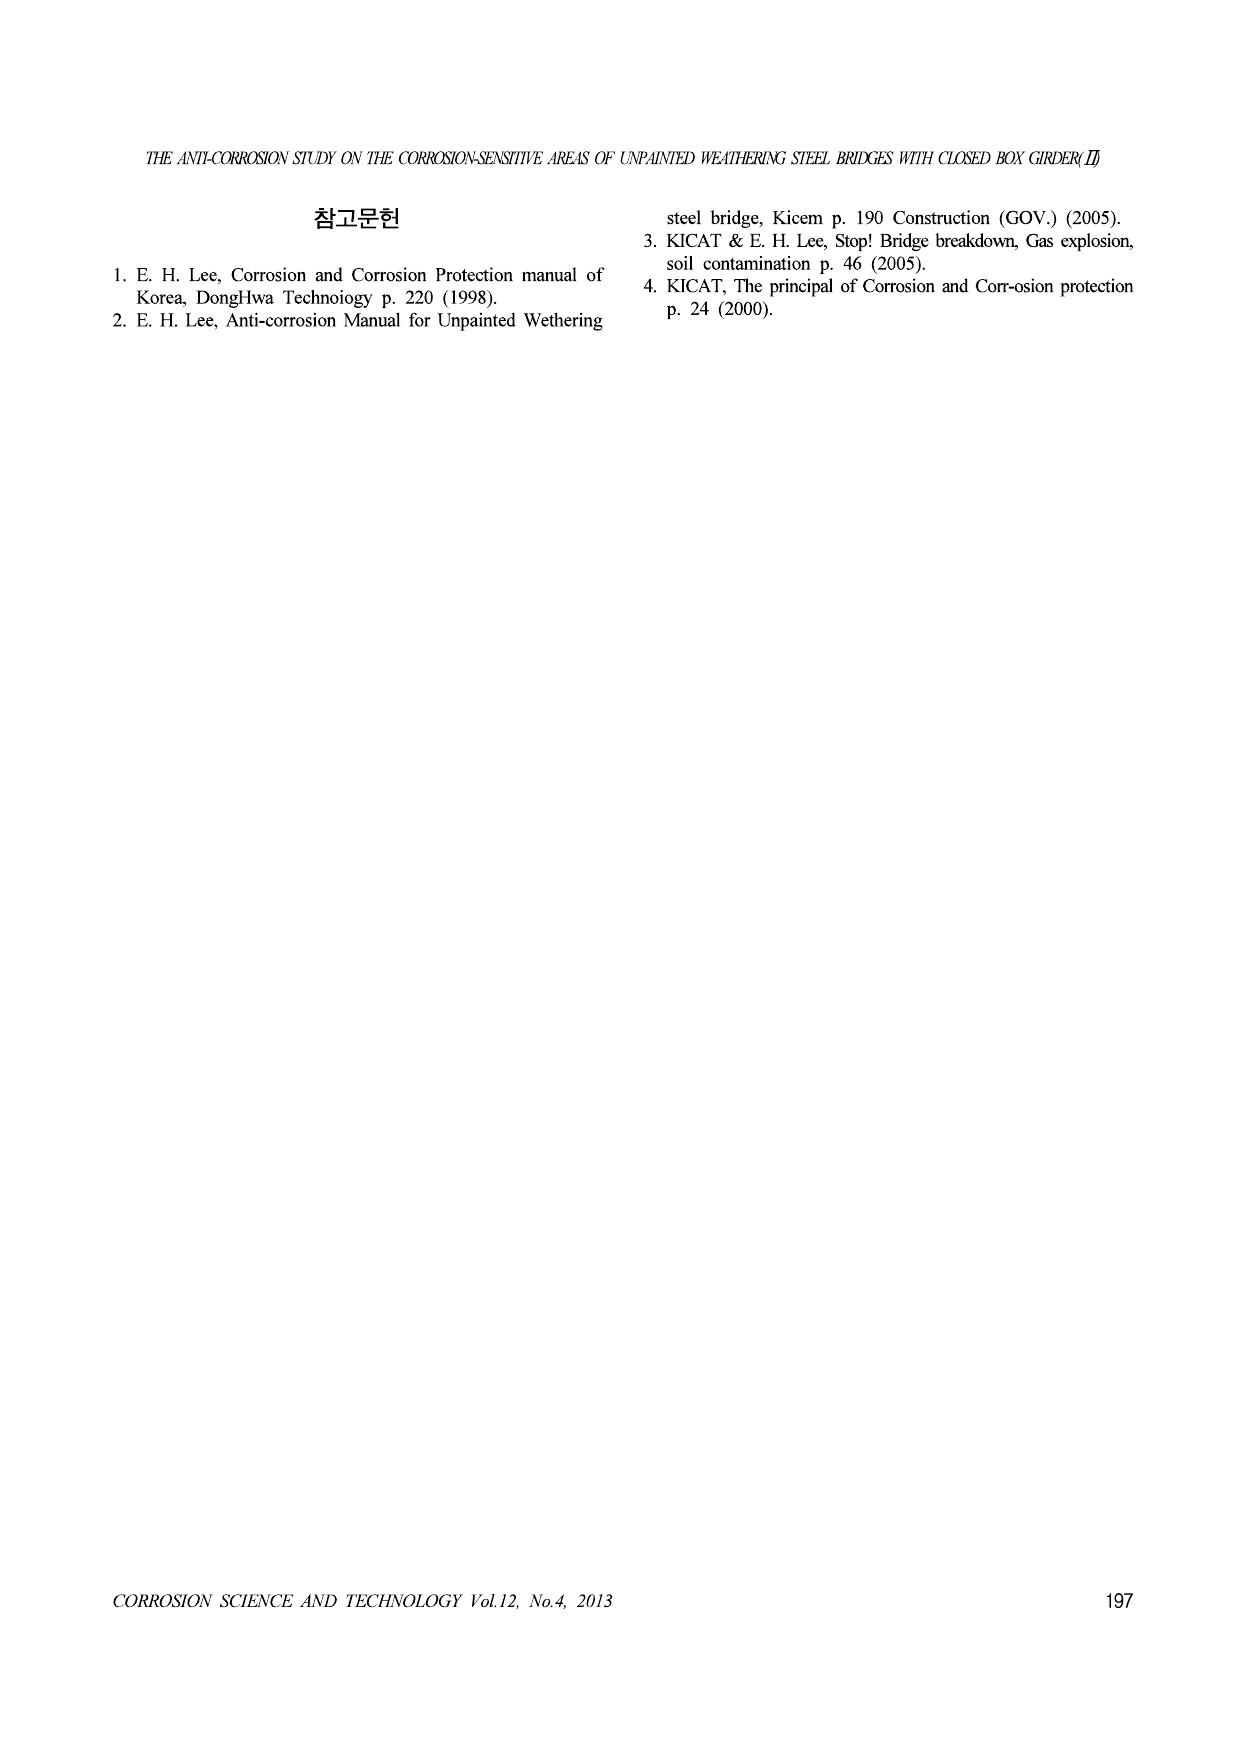 6. 밀폐 박스거더형 무도장 내후성강 교량의 부식취약부에 대한 방식대책 연구(II)(한국부식방식학회,1308)-7.jpg